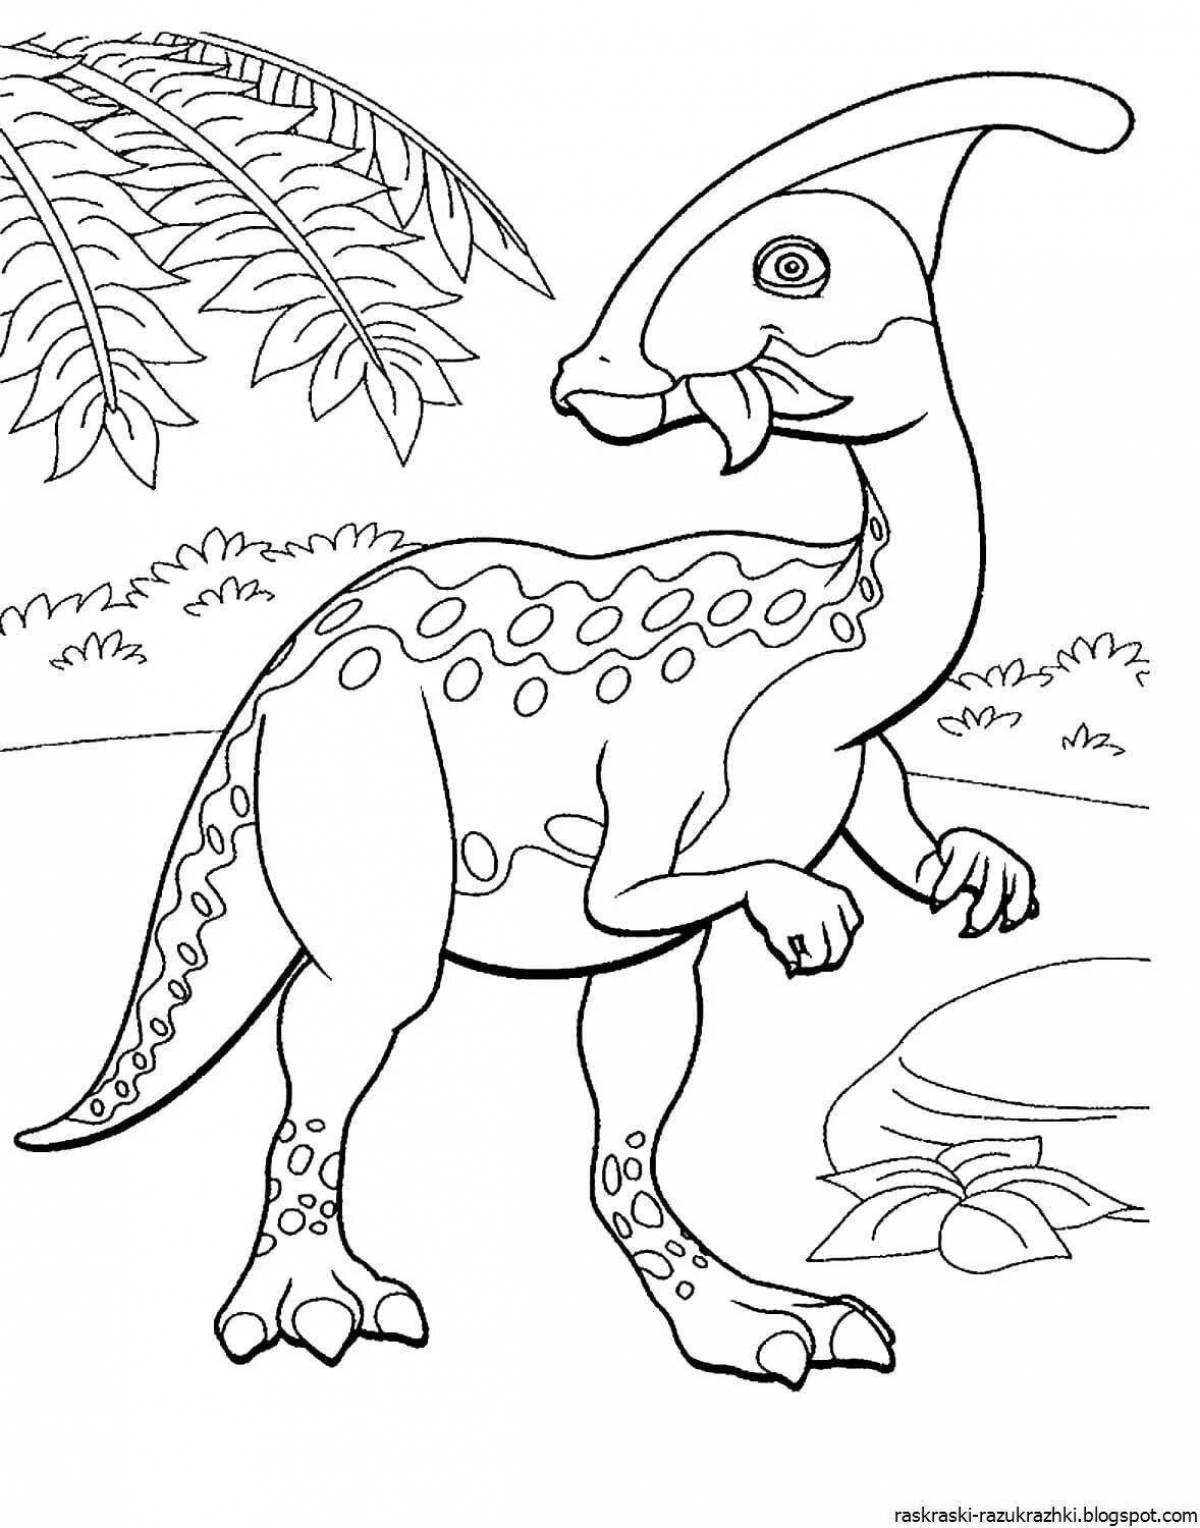 Увлекательная раскраска динозавров для мальчиков 7 лет